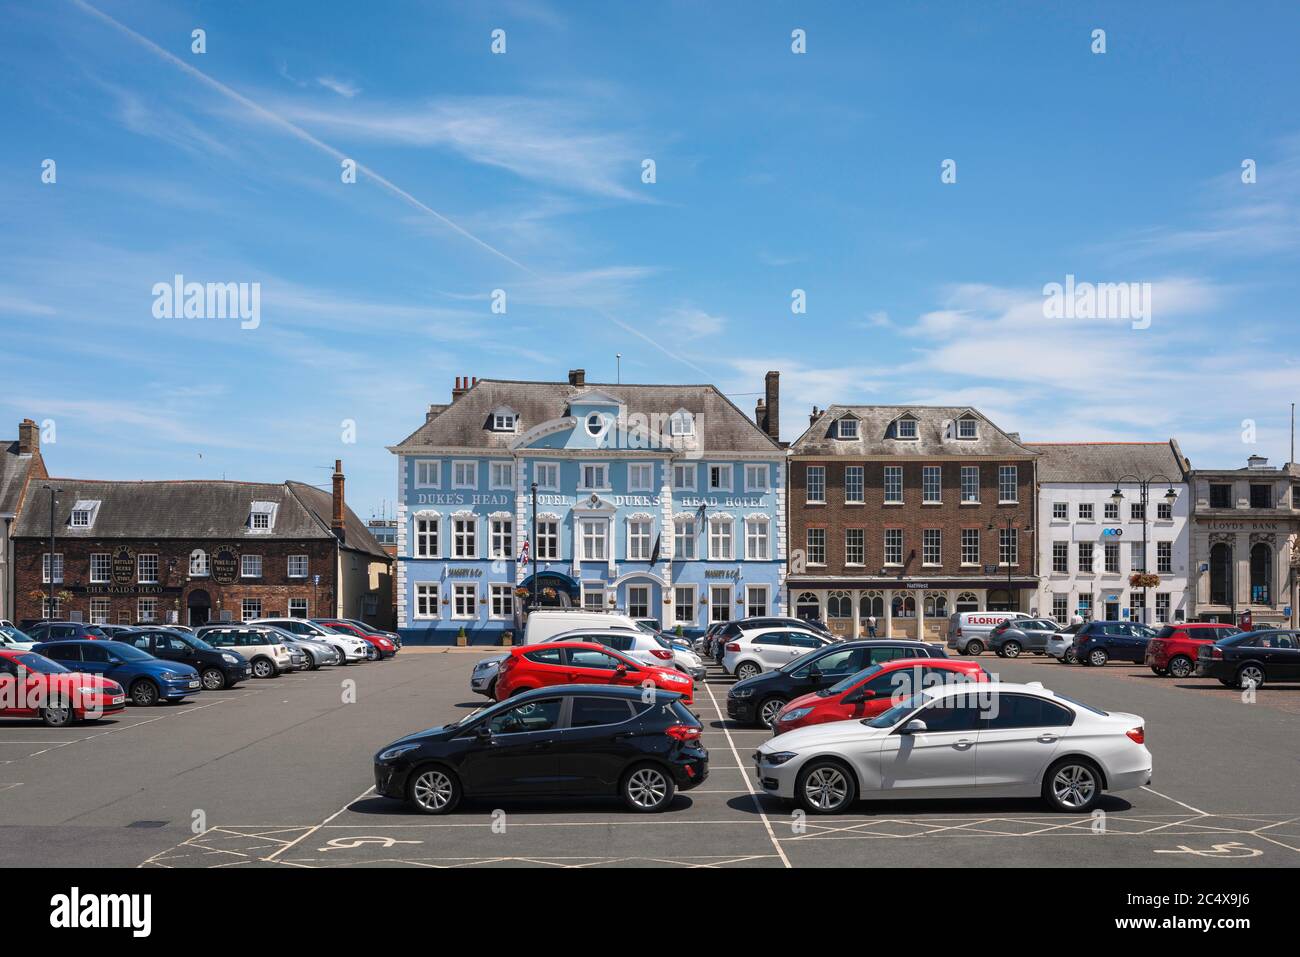 Dienstag Marktplatz, Blick auf Dienstag Marktplatz, ein georgischer Marktplatz im Zentrum des historischen King's Lynn, Norfolk, England, Großbritannien. Stockfoto